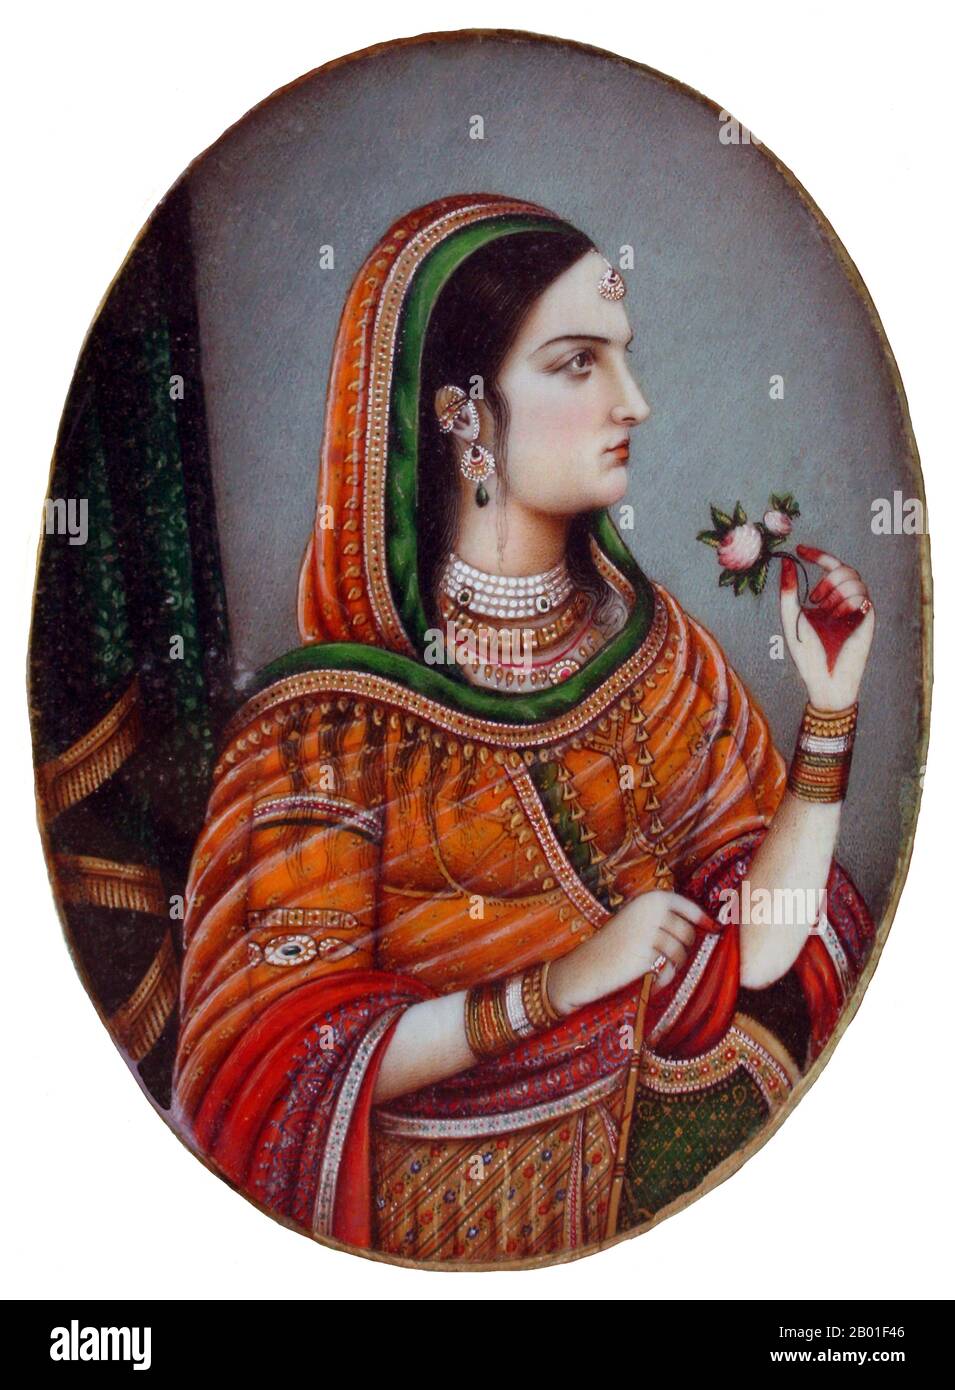 Indien: Kaiserin nur Jahan, Ehefrau von Kaiser Jahangir. Miniatur-Aquarellmalerei, Delhi, c. 1840. Begum nur Jahan (alternative Schreibweise: Noor Jahan, nur Jehan oder Jahan), auch bekannt als Mehr-un-Nisaa, war eine Kaiserin der Mogul-Dynastie, die einen Großteil des indischen Subkontinents regierte. Begum nur Jahan war die 20. Und liebste Ehefrau des Mogul-Kaisers Jahangir, der ihr zweiter Ehemann war - und die berühmteste Kaiserin des Mogul-Reiches. Die Geschichte der Verliebtheit des Paares füreinander und der Beziehung zwischen ihnen ist das Zeug vieler (oft apokryphaler) Legenden. Stockfoto